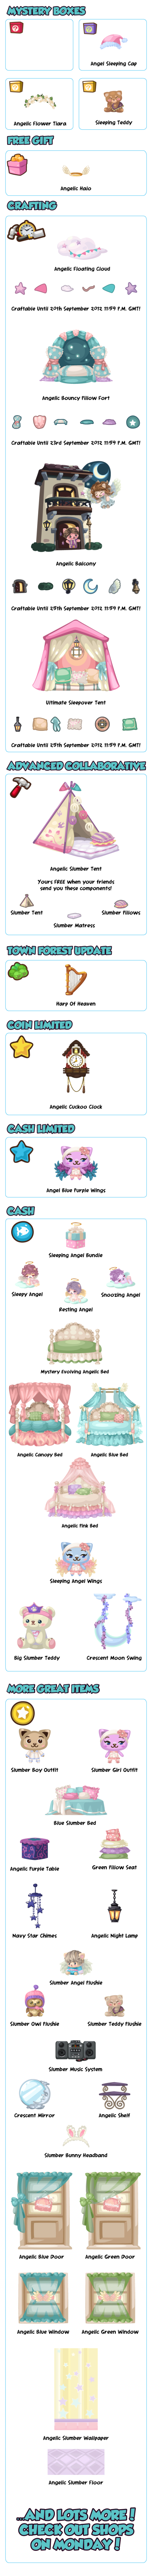 Bienvenidos a una pijamada angelical Angelic-slumber